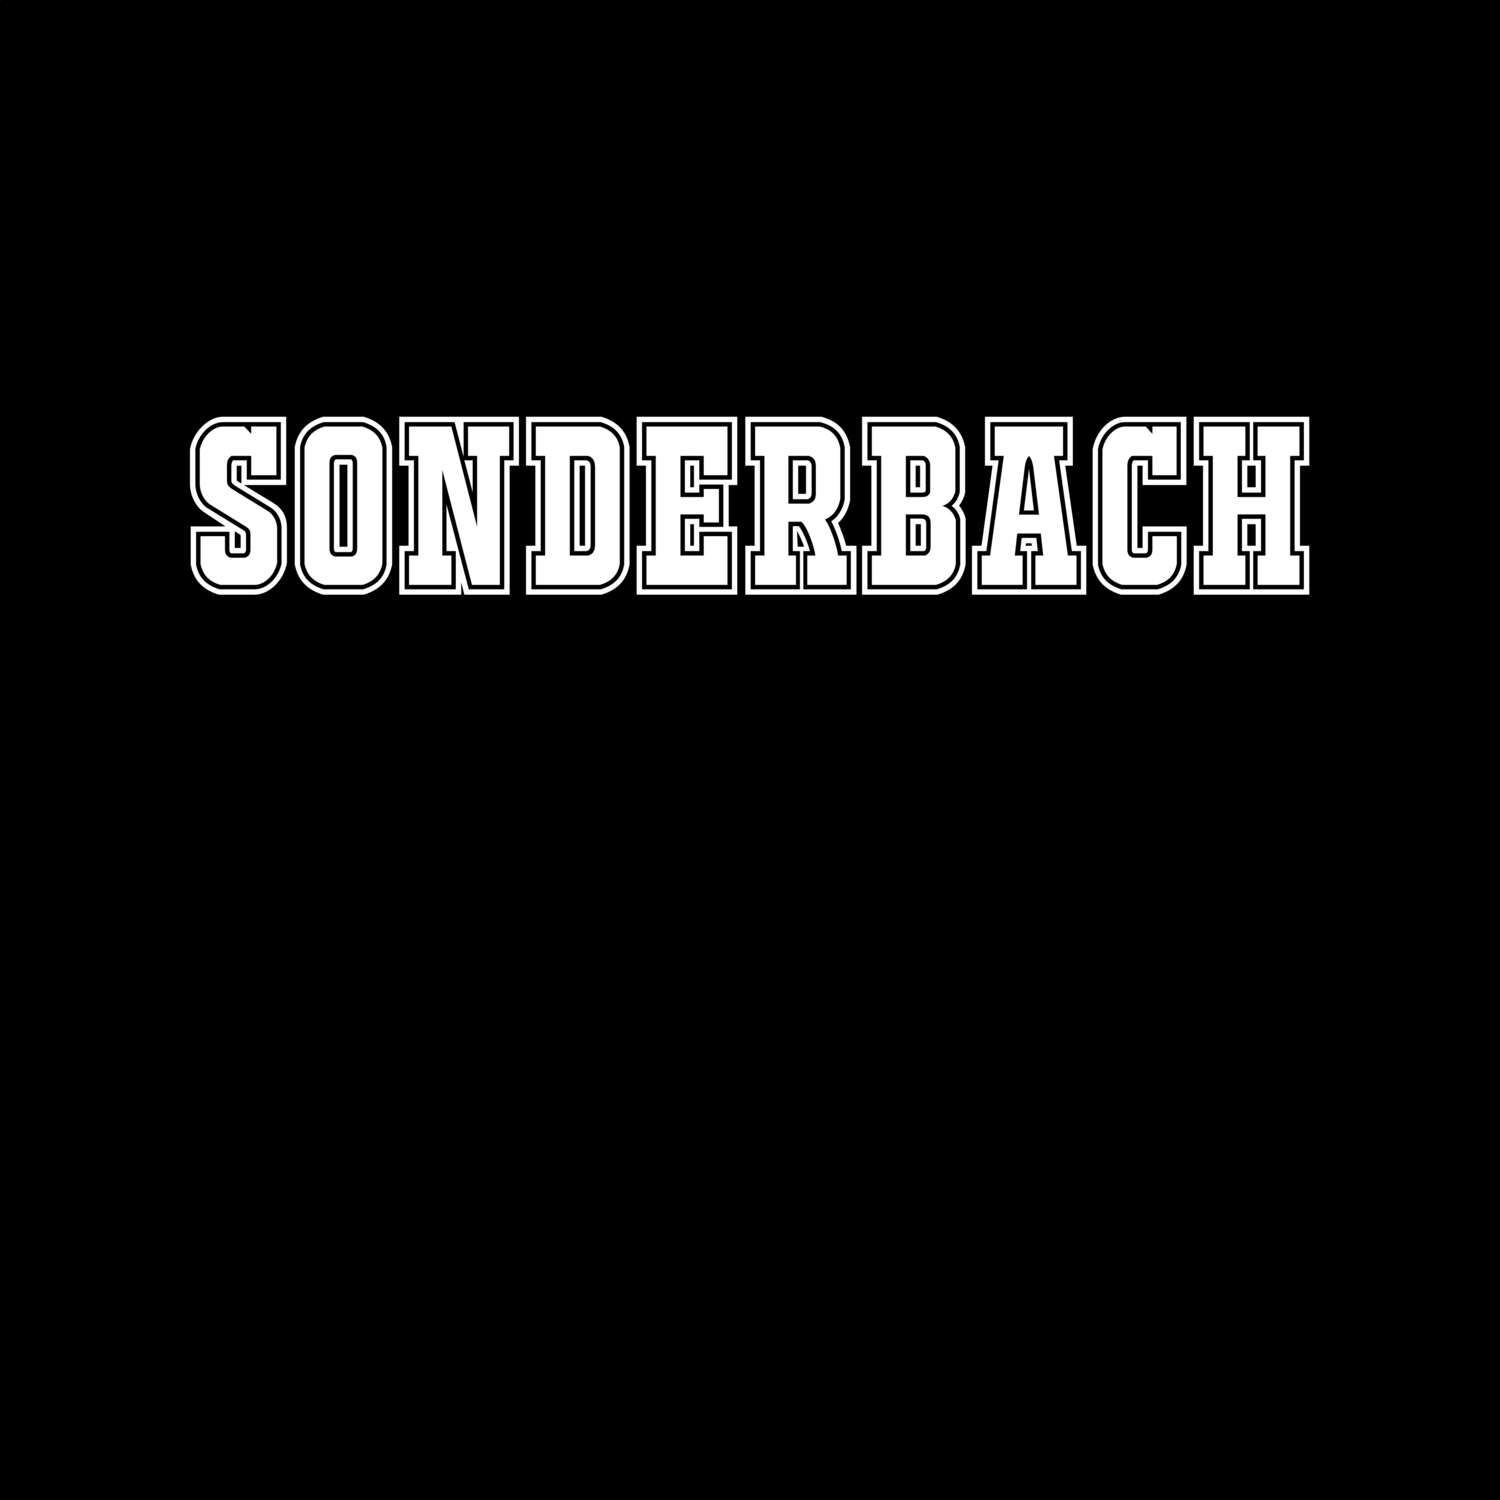 Sonderbach T-Shirt »Classic«